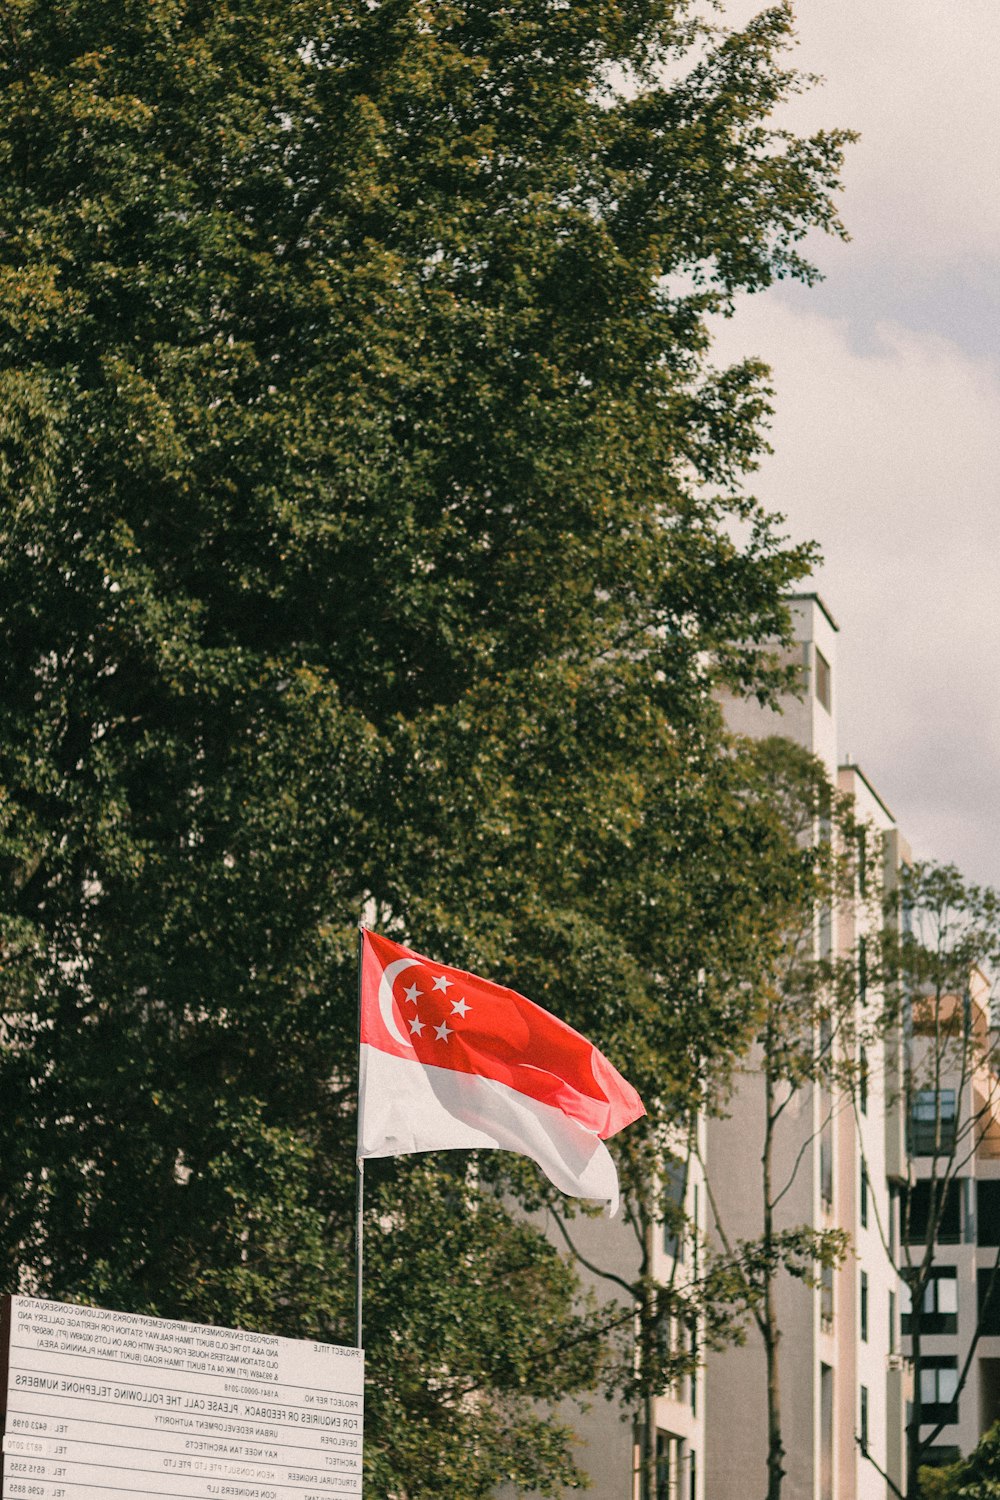 bandeira vermelha branca e preta no mastro perto de árvores verdes durante o dia